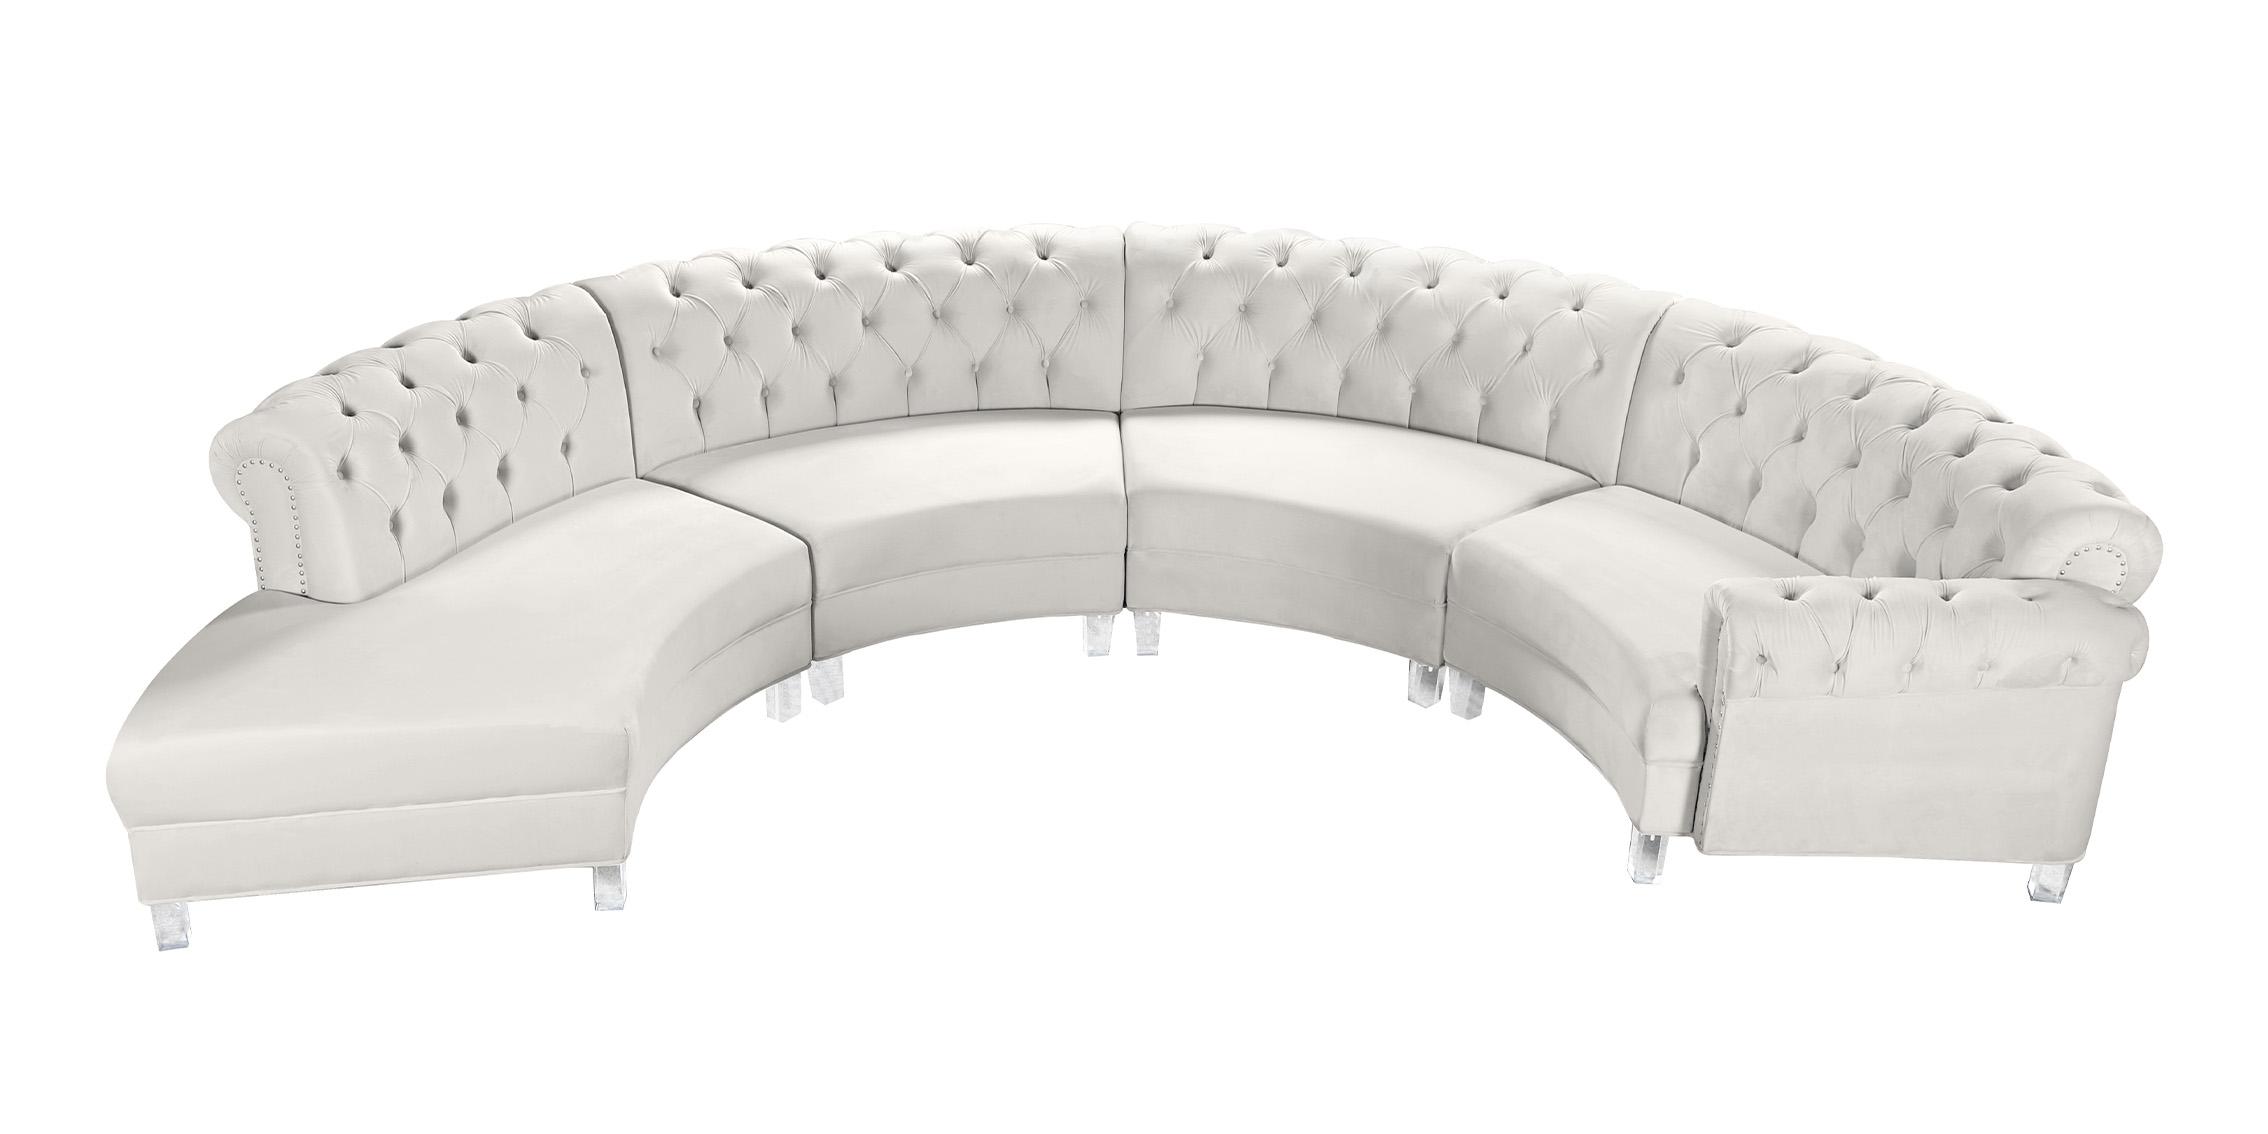 

    
Meridian Furniture ANABELLA 697Cream-4 Sectional Sofa Cream 697Cream-Sec-4PC
